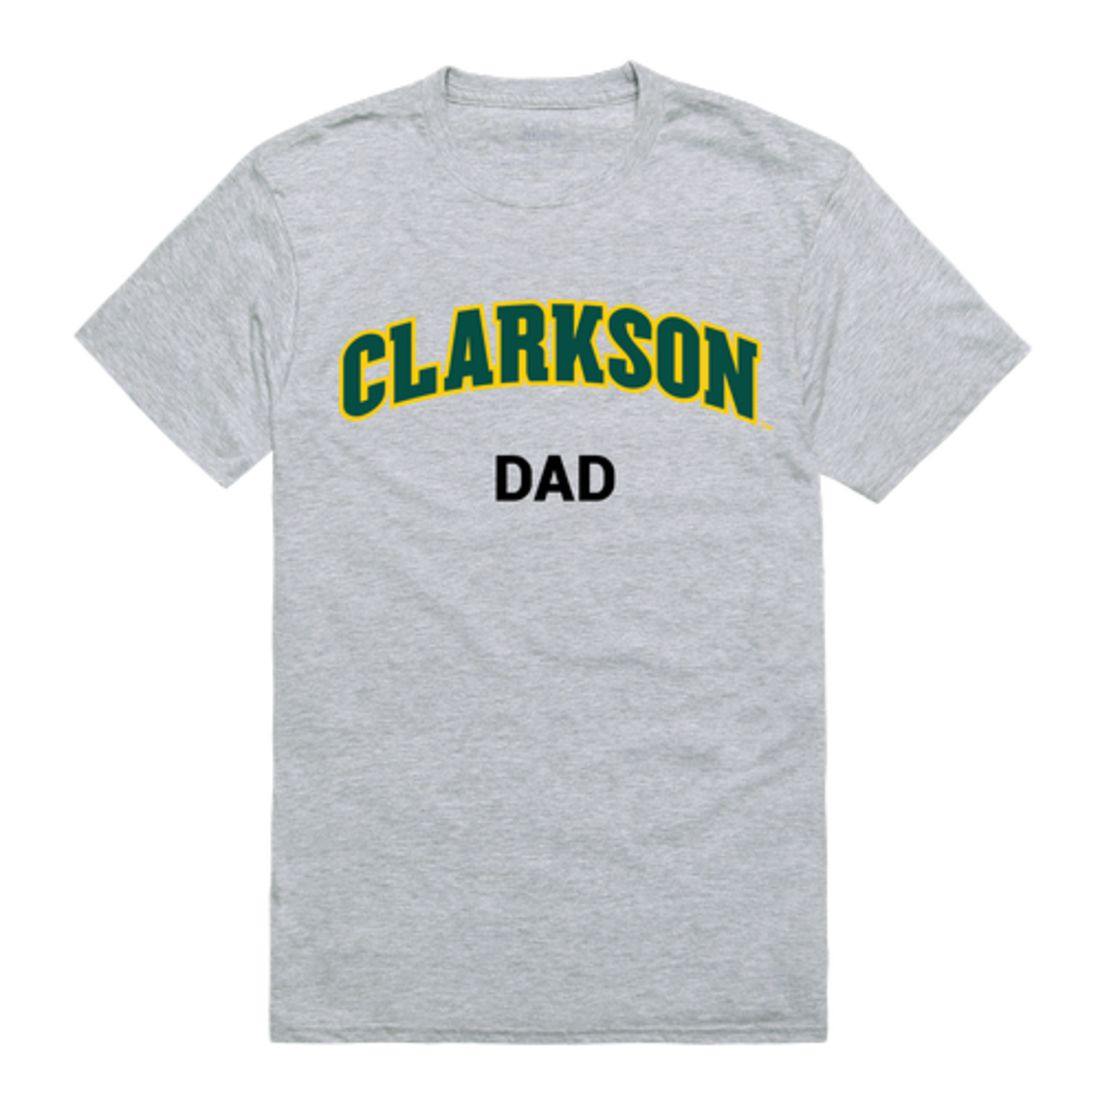 Clarkson University Golden Knights College Dad T-Shirt-Campus-Wardrobe